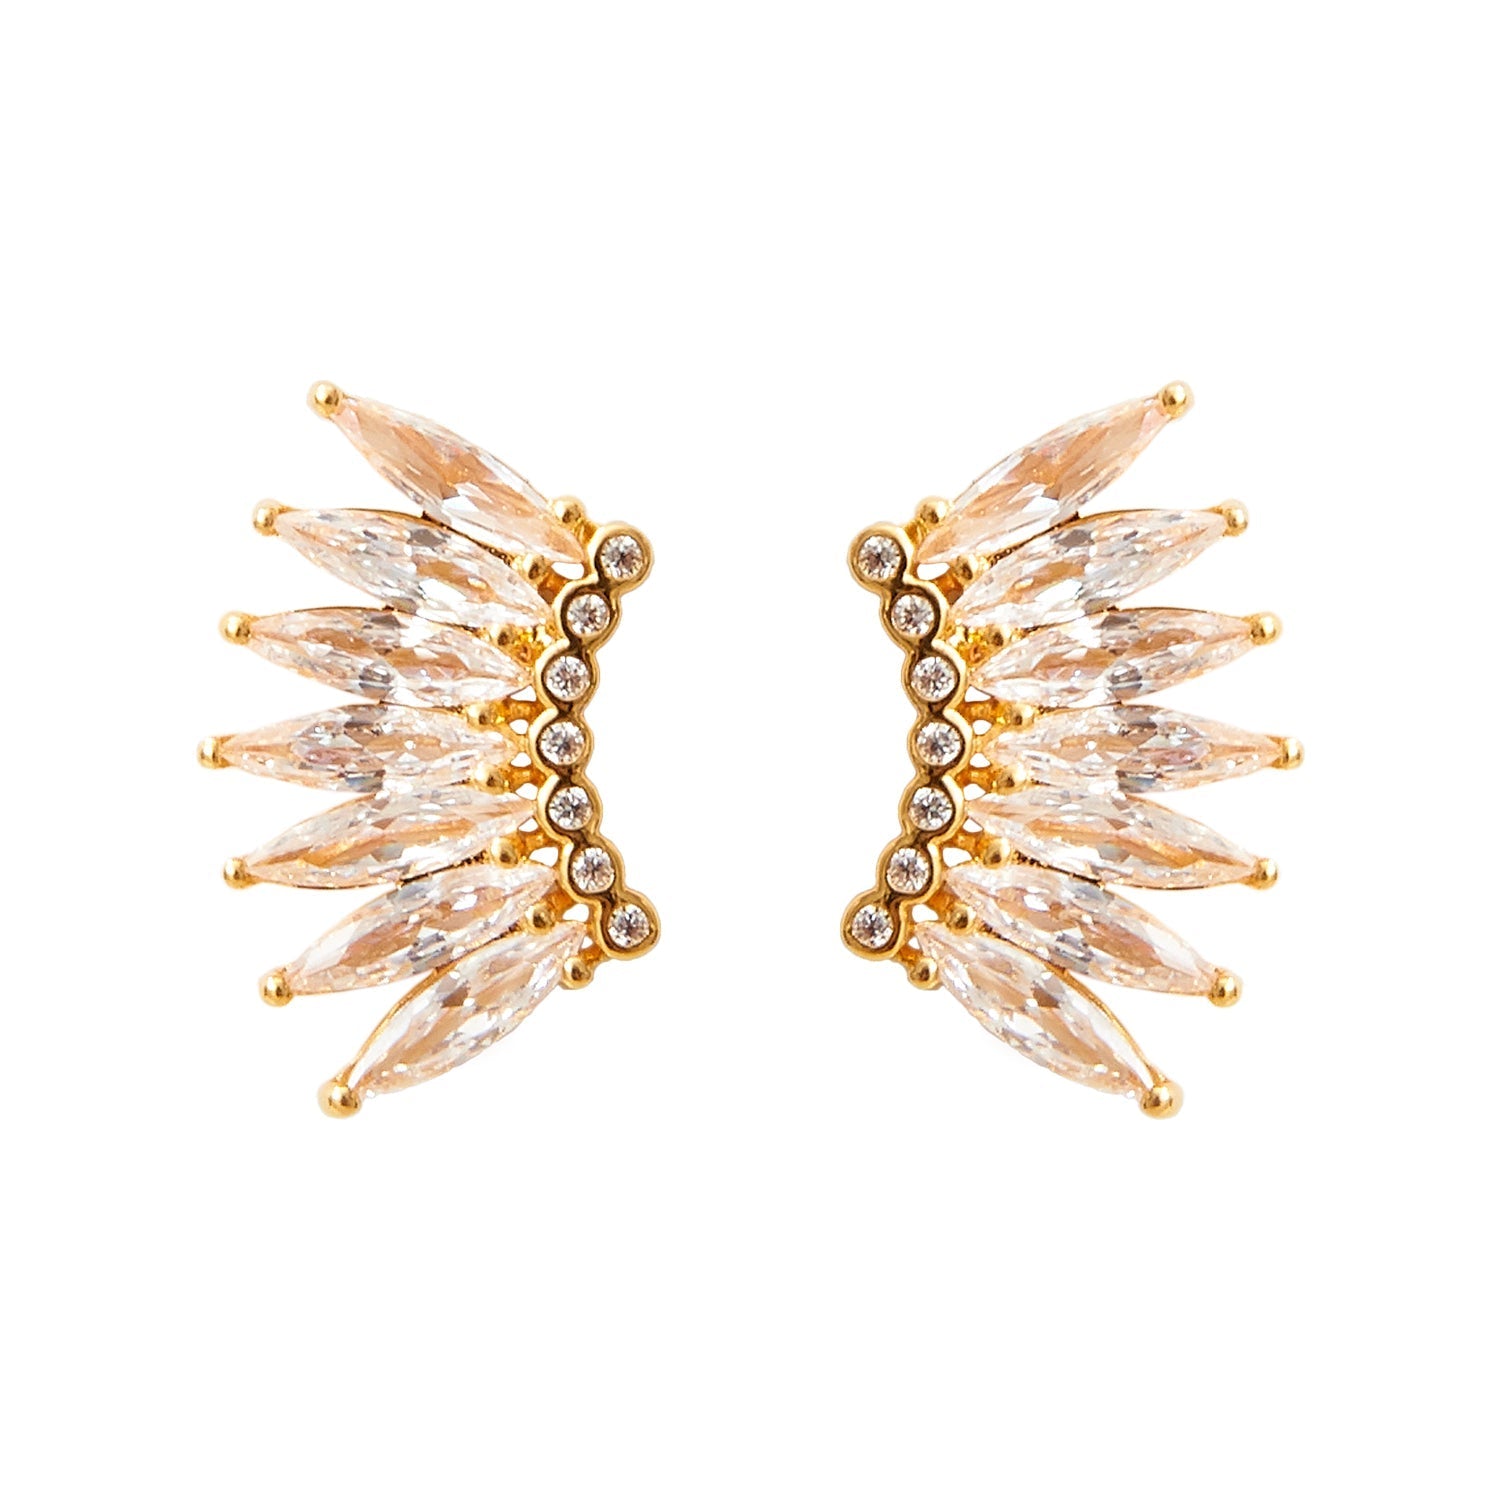 Petite Crystal Madeline Earrings Gold by Mignonne Gavigan